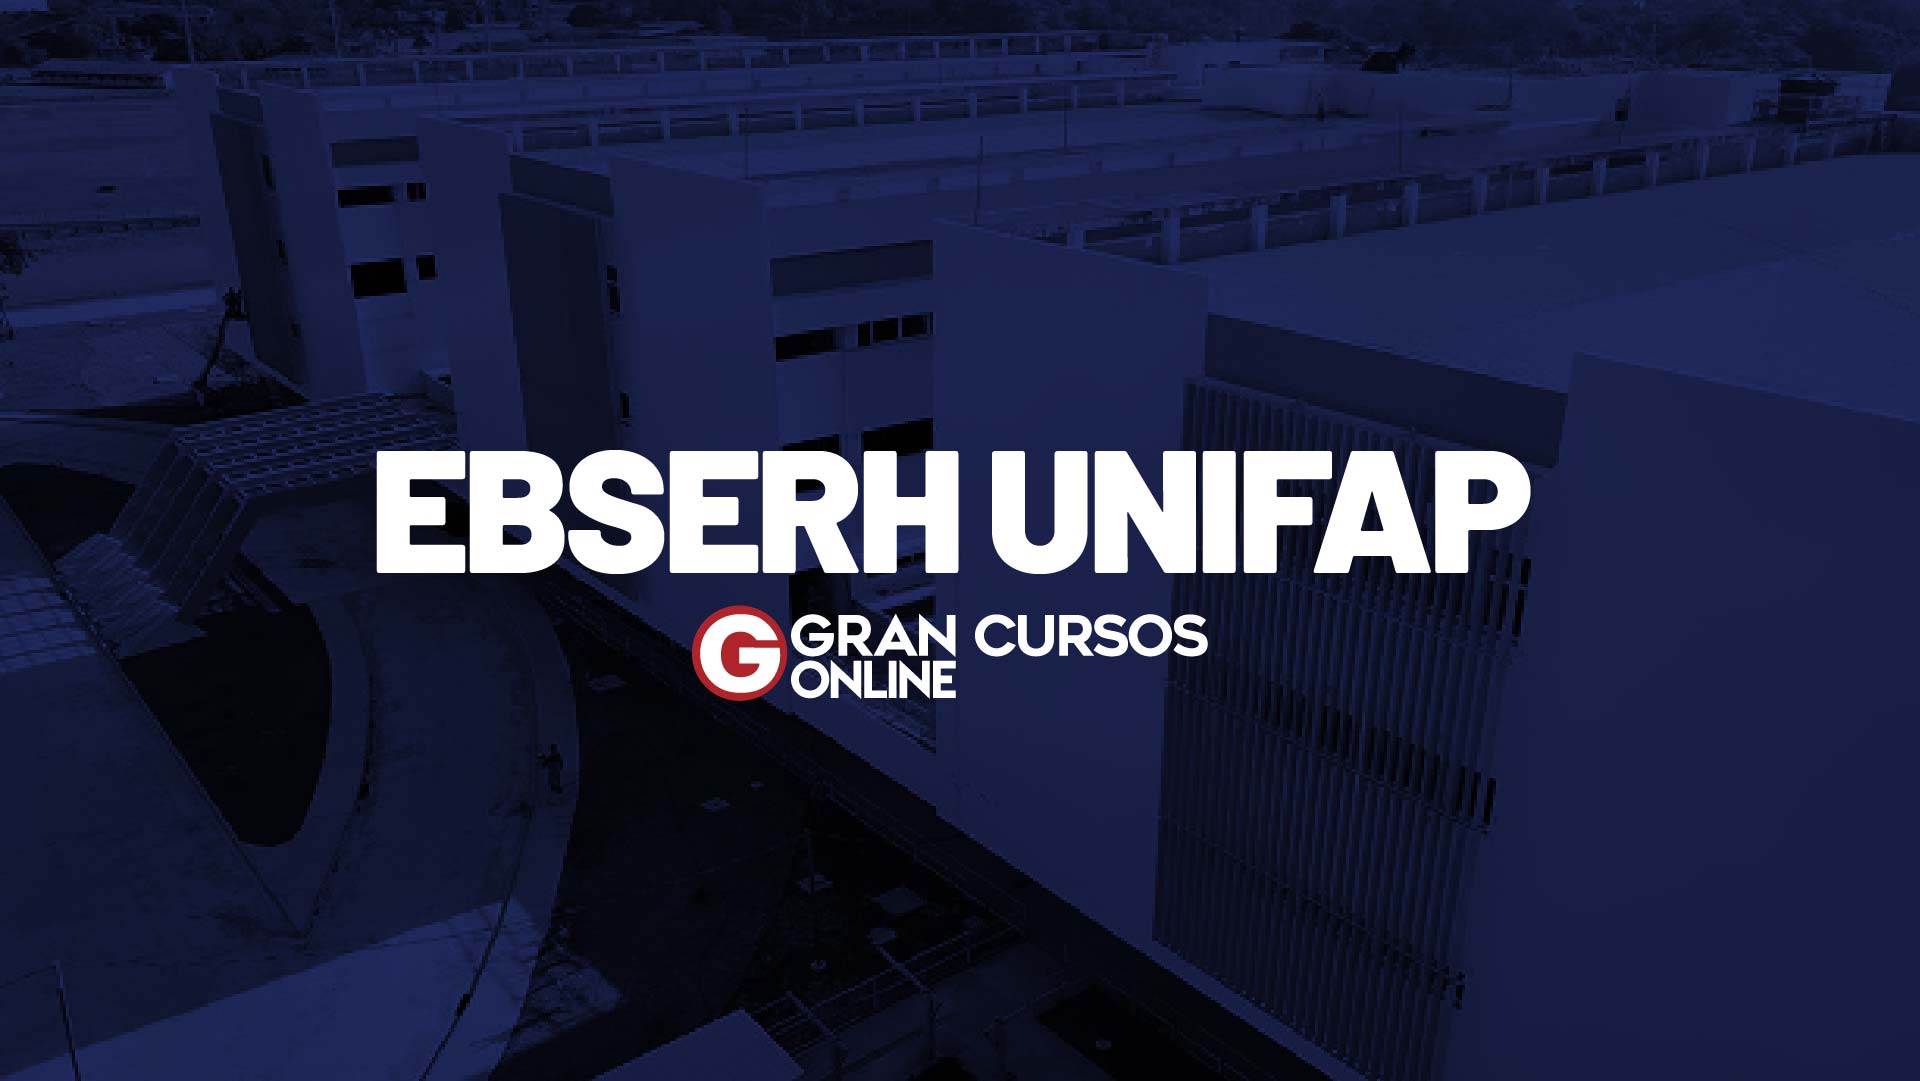 Concurso EBSERH HU UNIFAP - Hospital Universitário Federal do